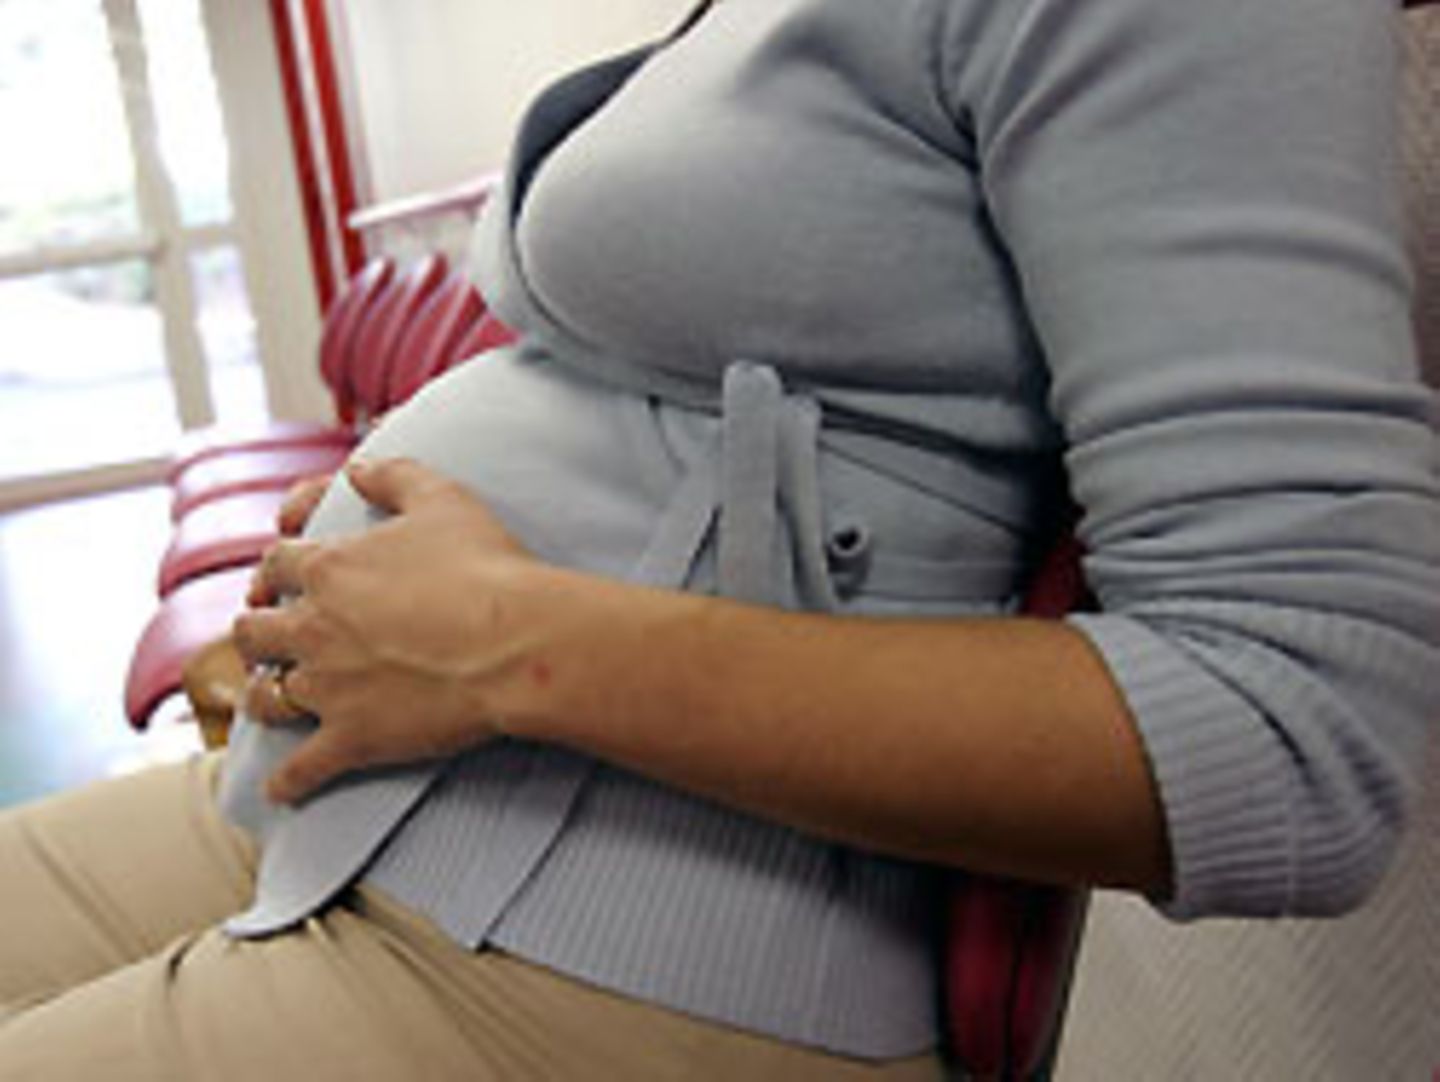 Das Bundesarbeitsgericht wird diese Woche entscheiden, ob eine schwangere Angestellte bei einer Beförderung zugunsten eines Kollegen übergangen wurde